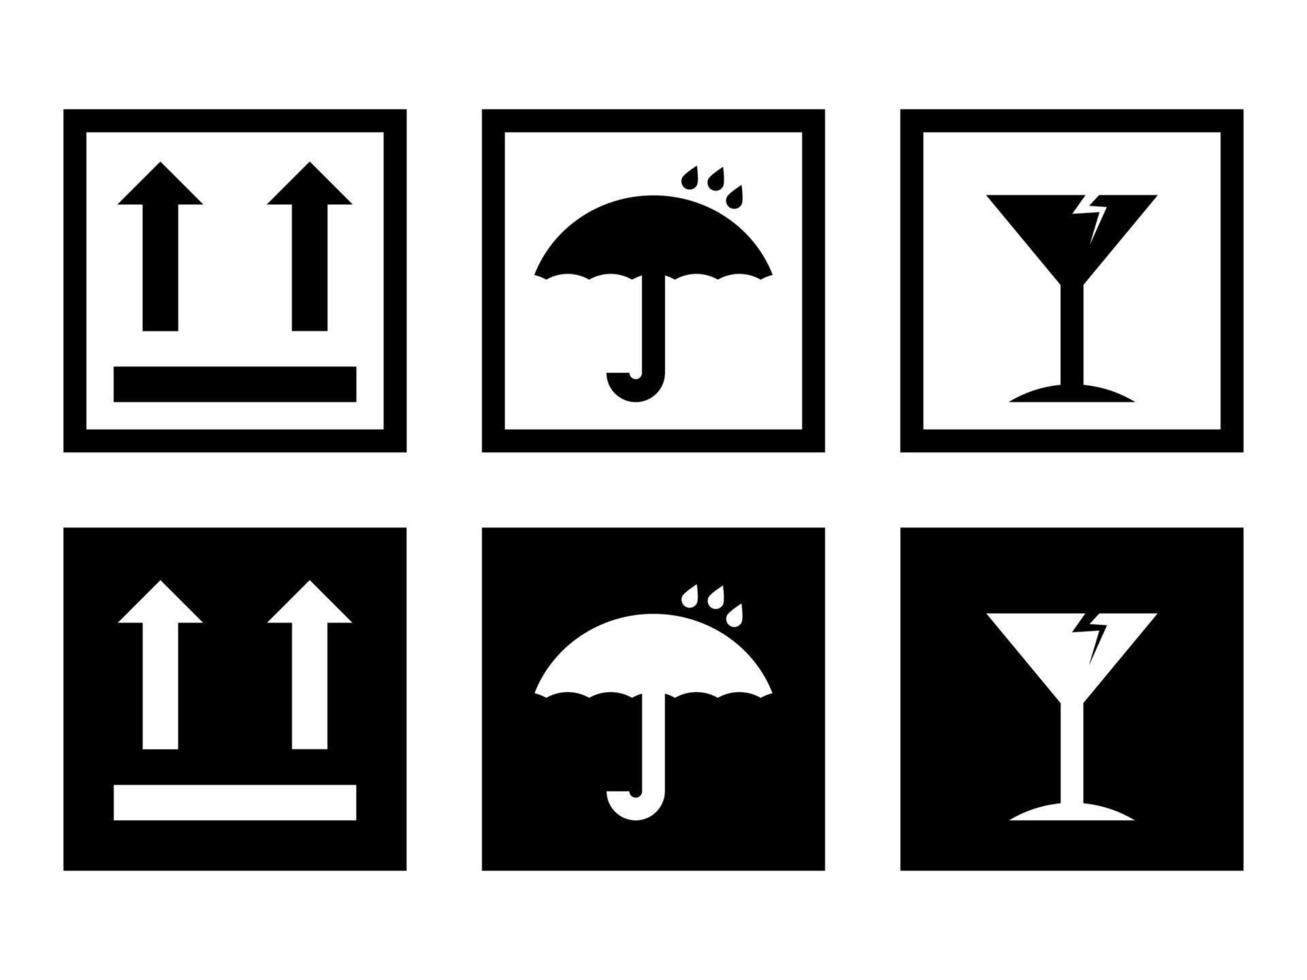 boîte fragile, les panneaux vectoriels d'avertissement de fret définis dans des icônes de style moderne sont situés sur des arrière-plans blancs et noirs. le pack contient six icônes. vecteur